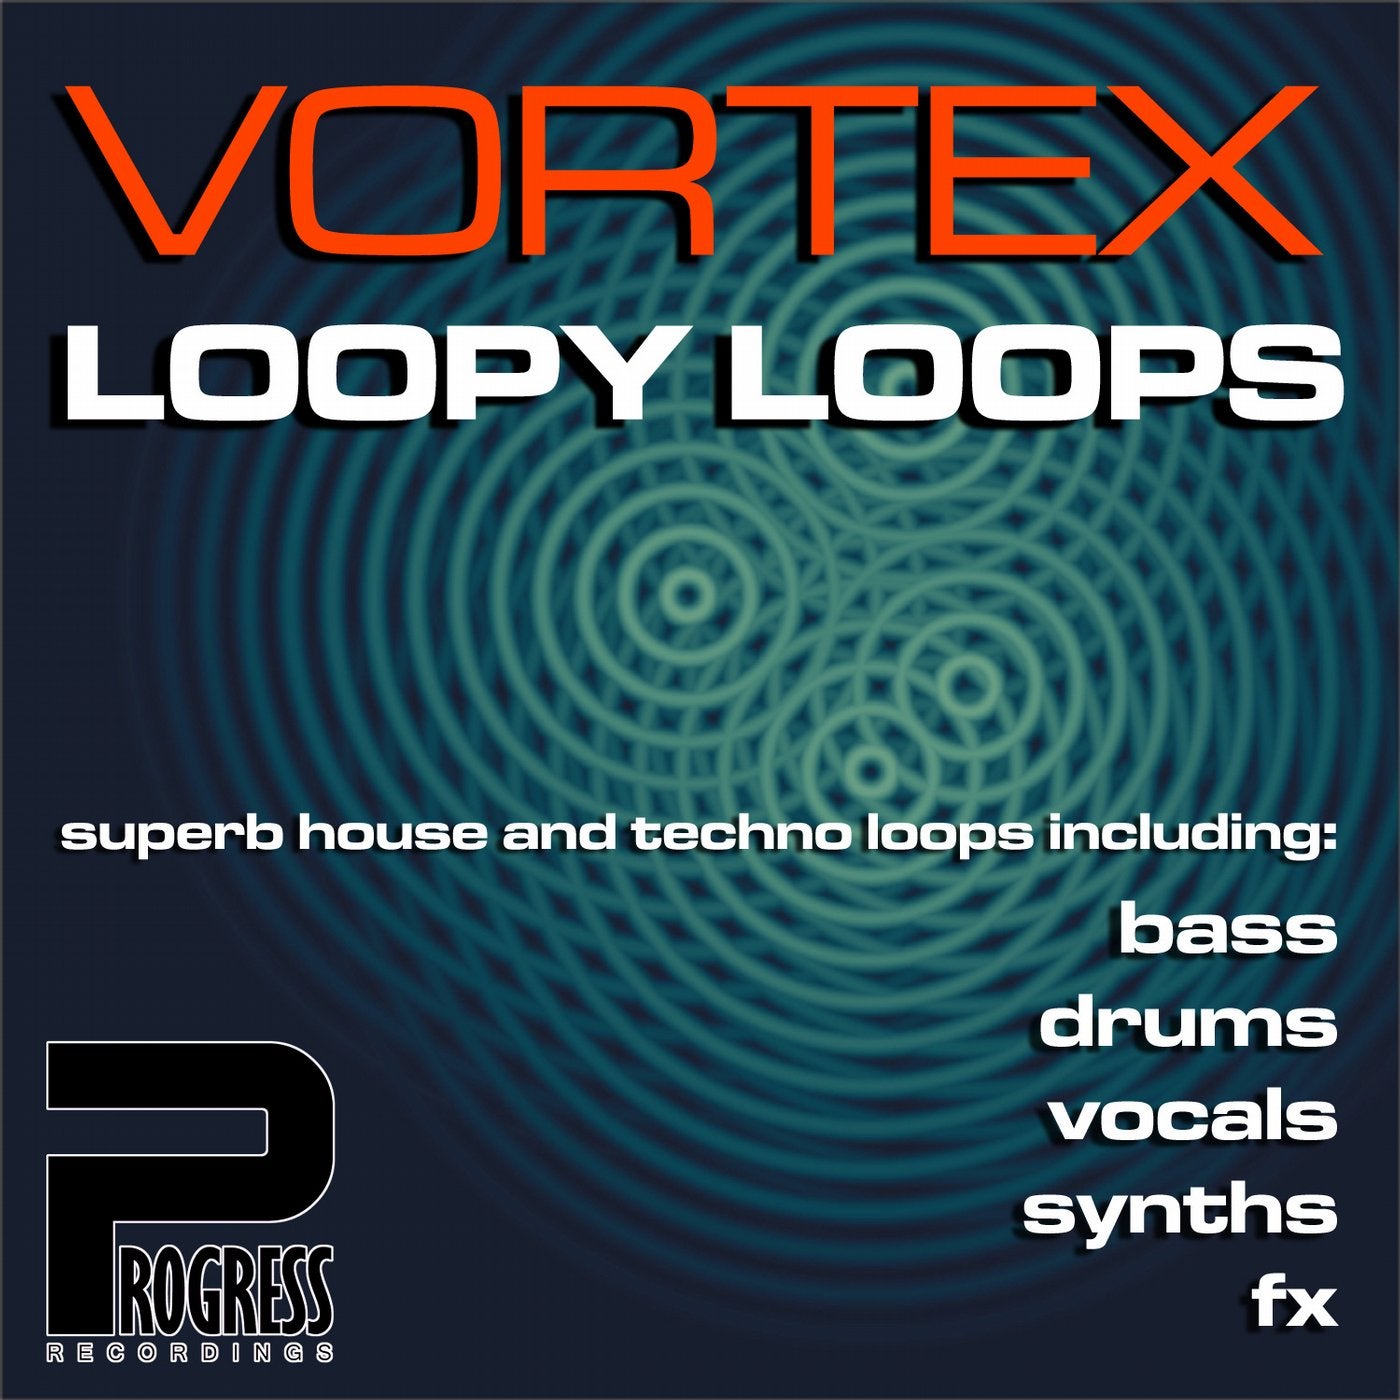 Vortex Loopy Loops Volume 1